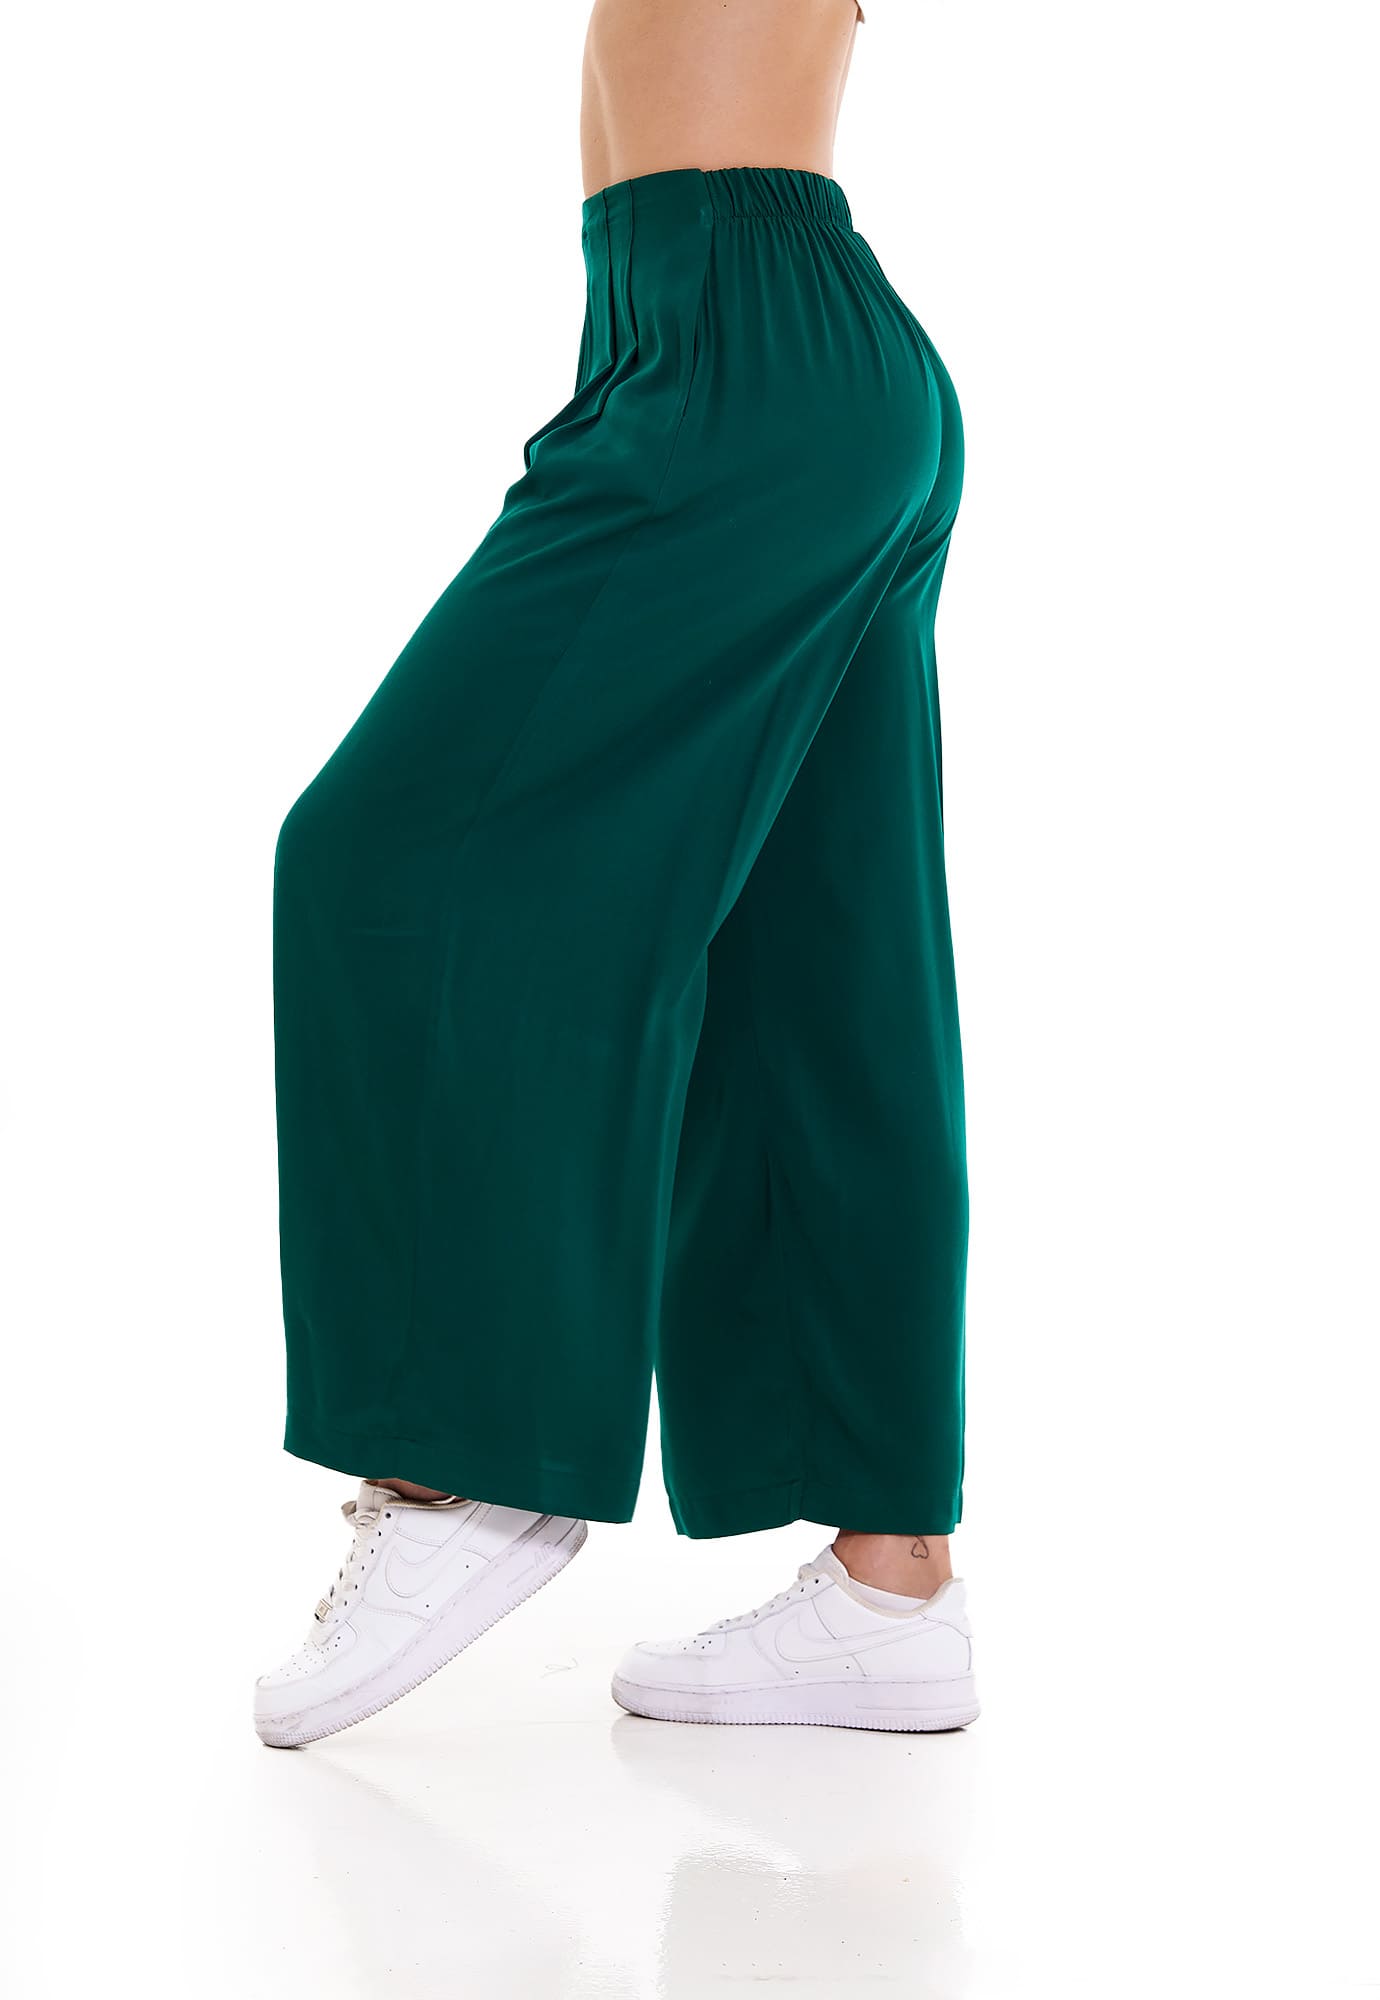 Pantalón verde hoja bota amplia mujer